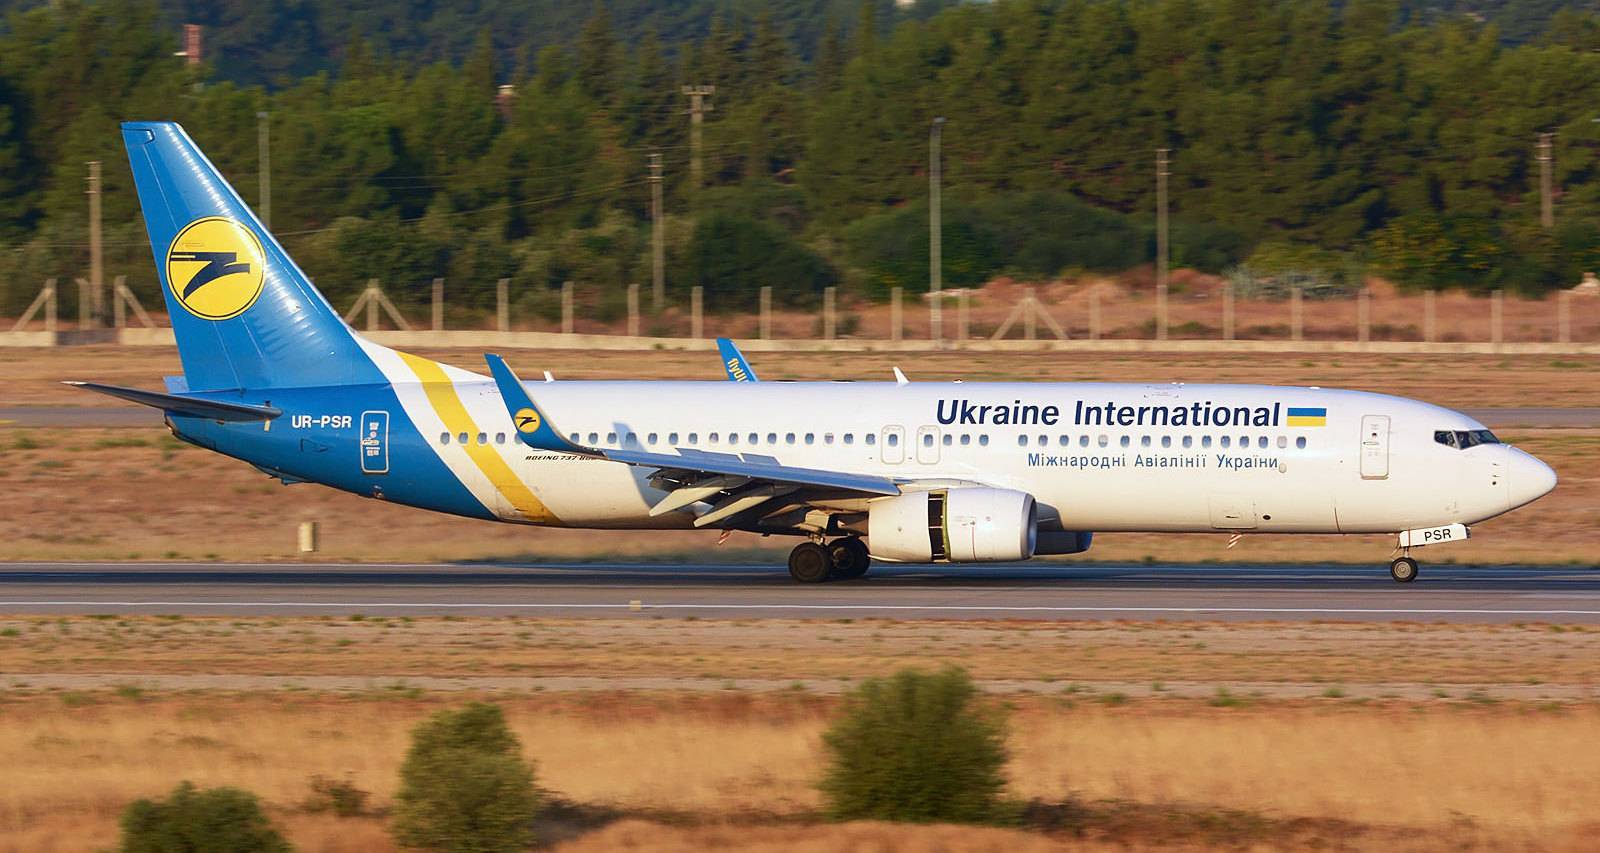 Ukraine international airlines - отзывы пассажиров 2017-2018 про авиакомпанию мау авиалинии украины